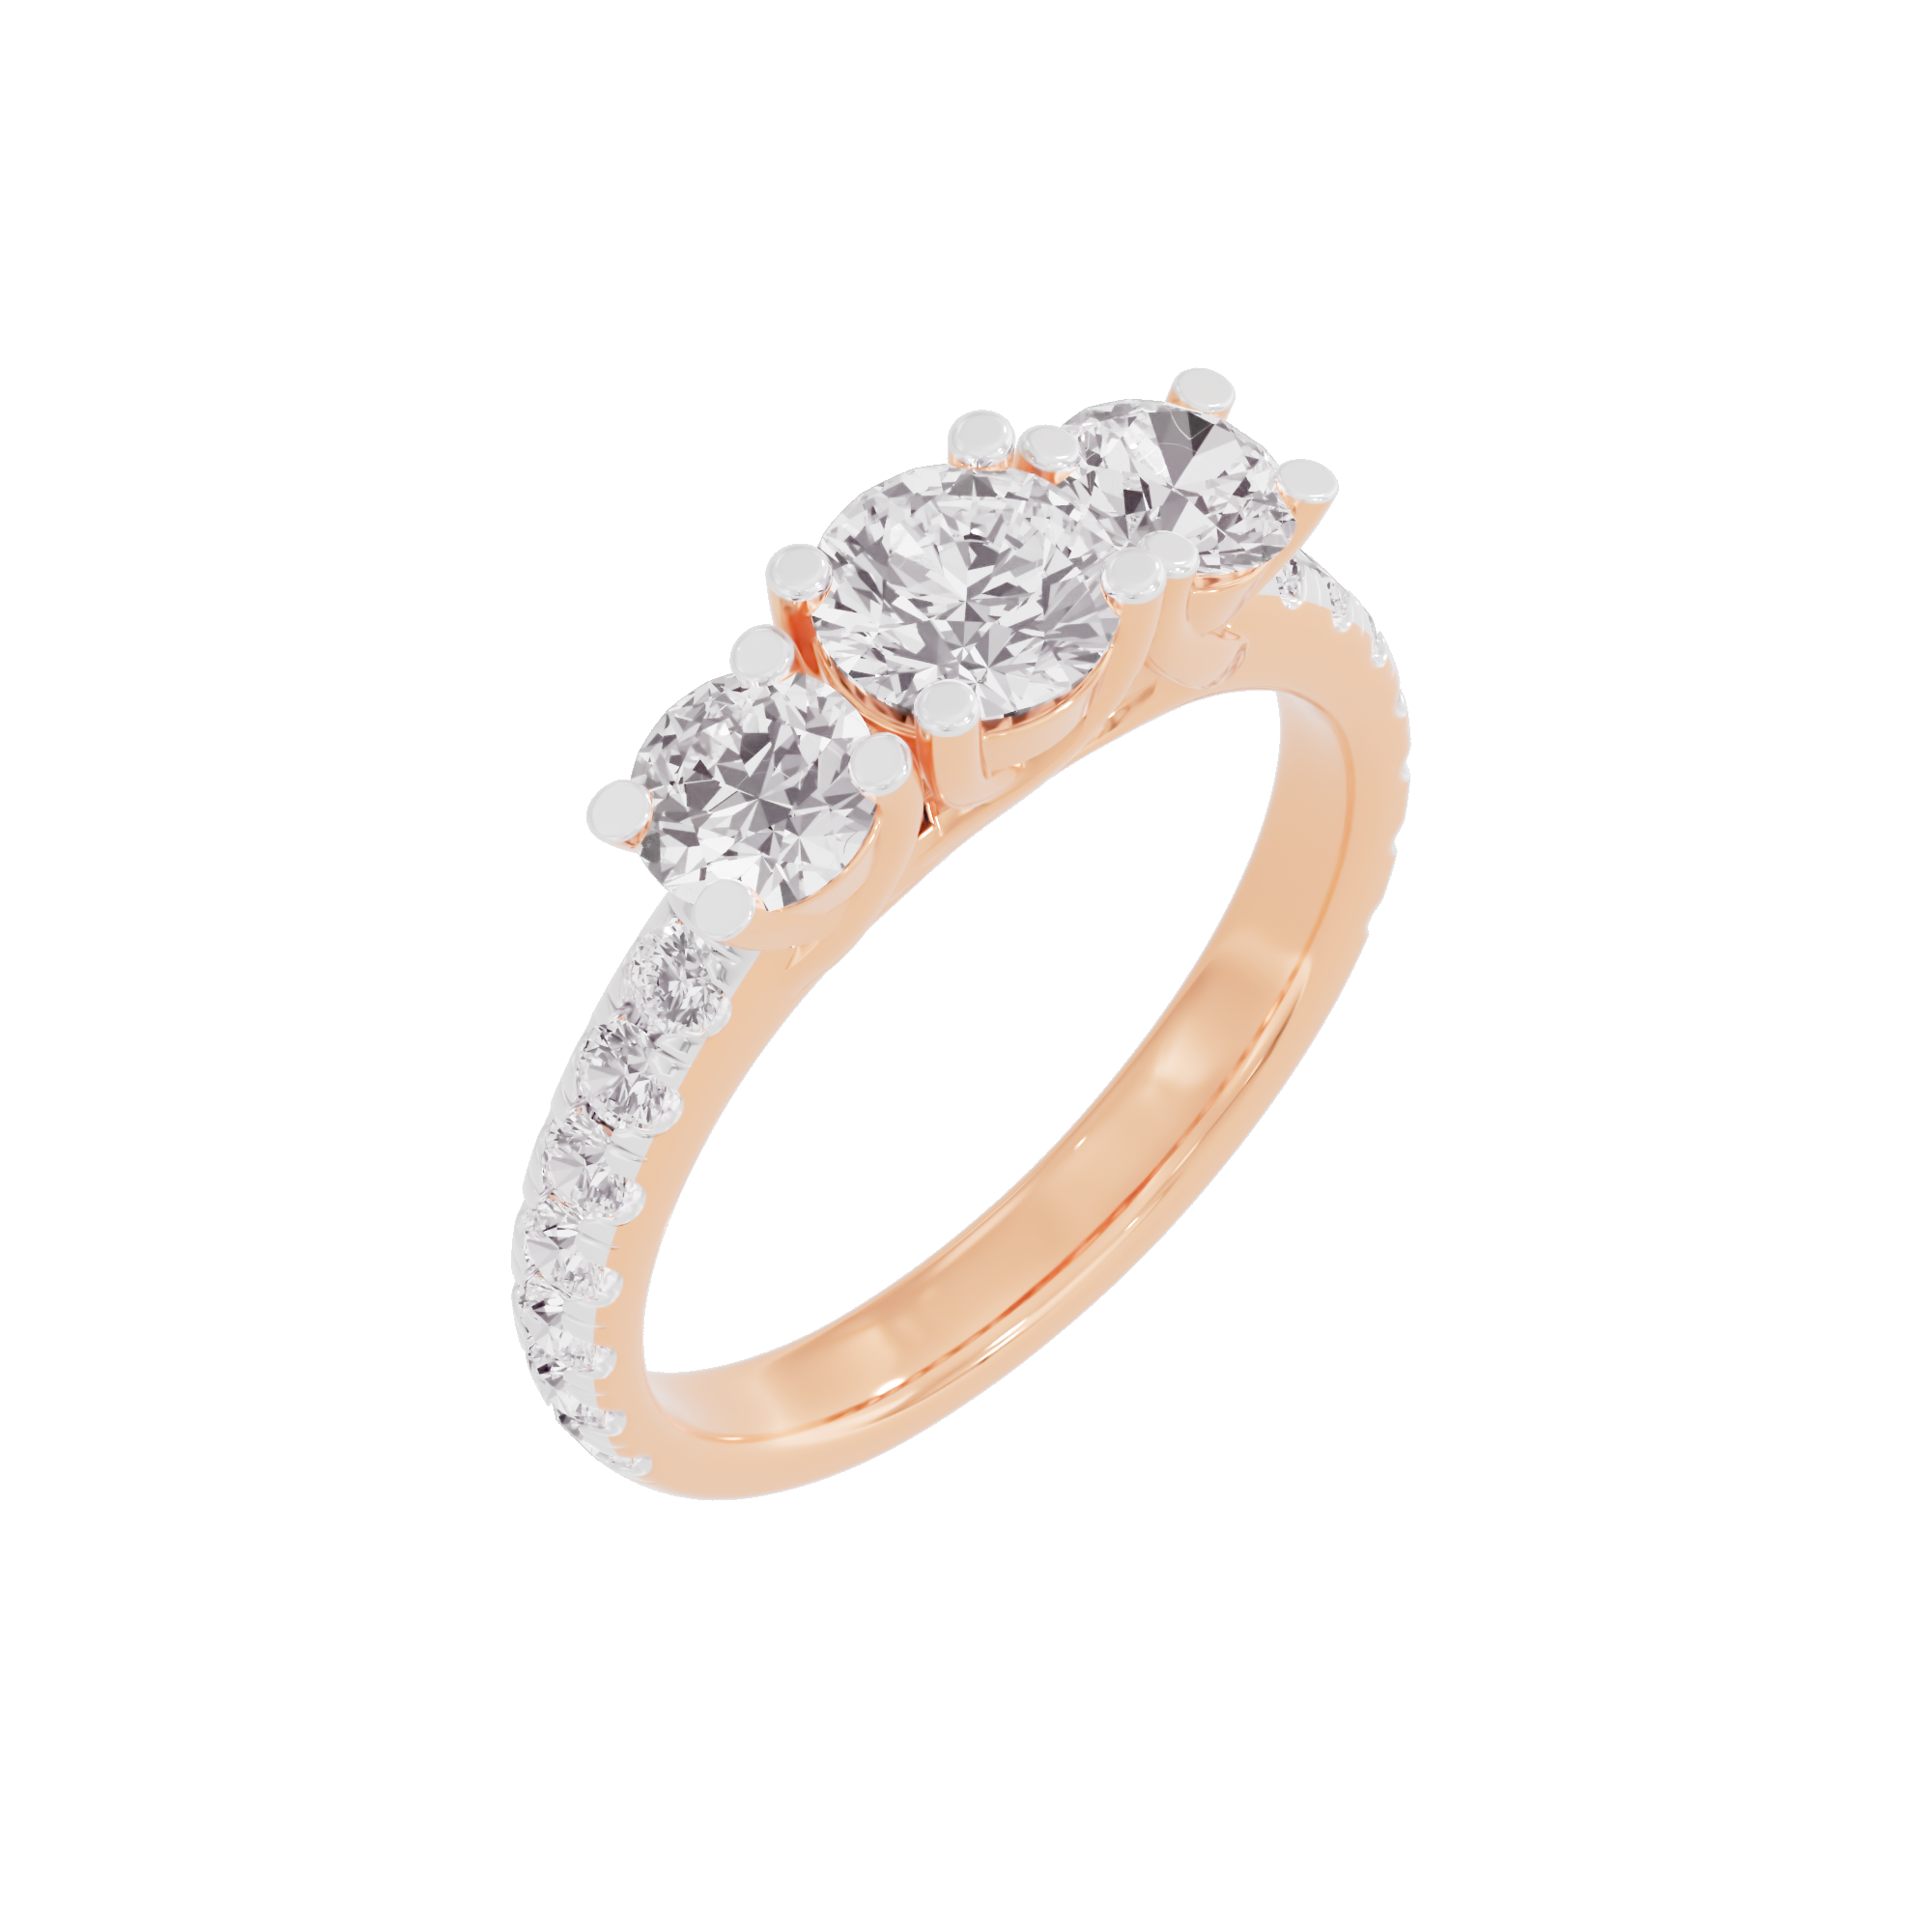 Starlit Serenade Diamond Ring